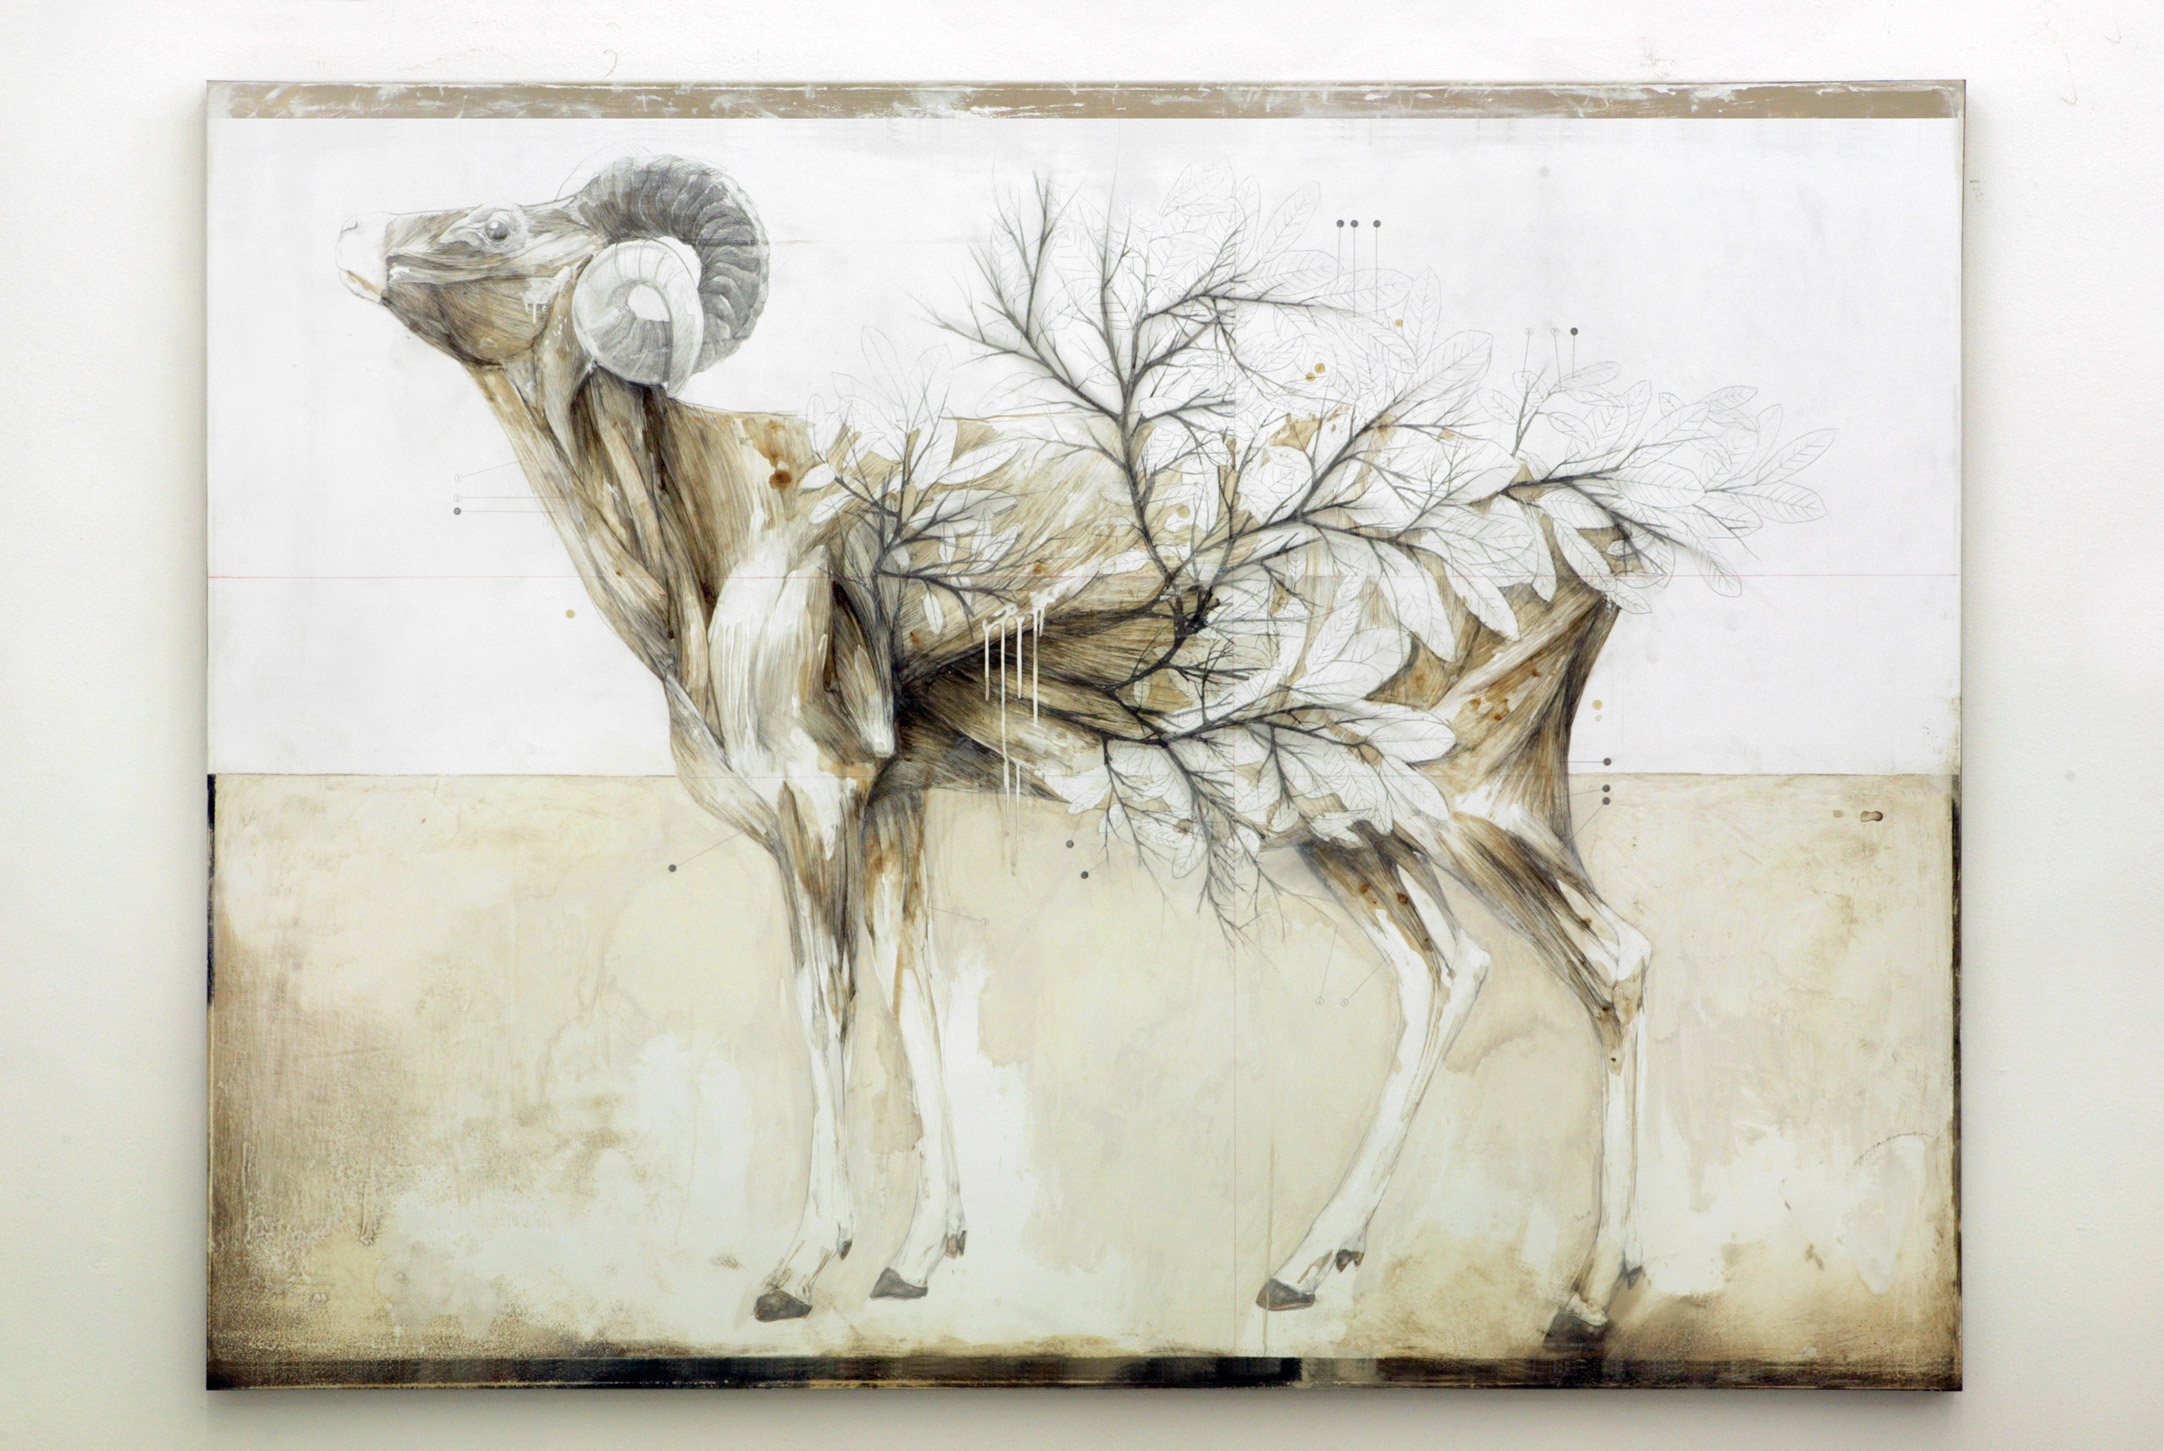 Природа и анатомия или баланс между реальностью и воображением в картинах Нунцио Пачи